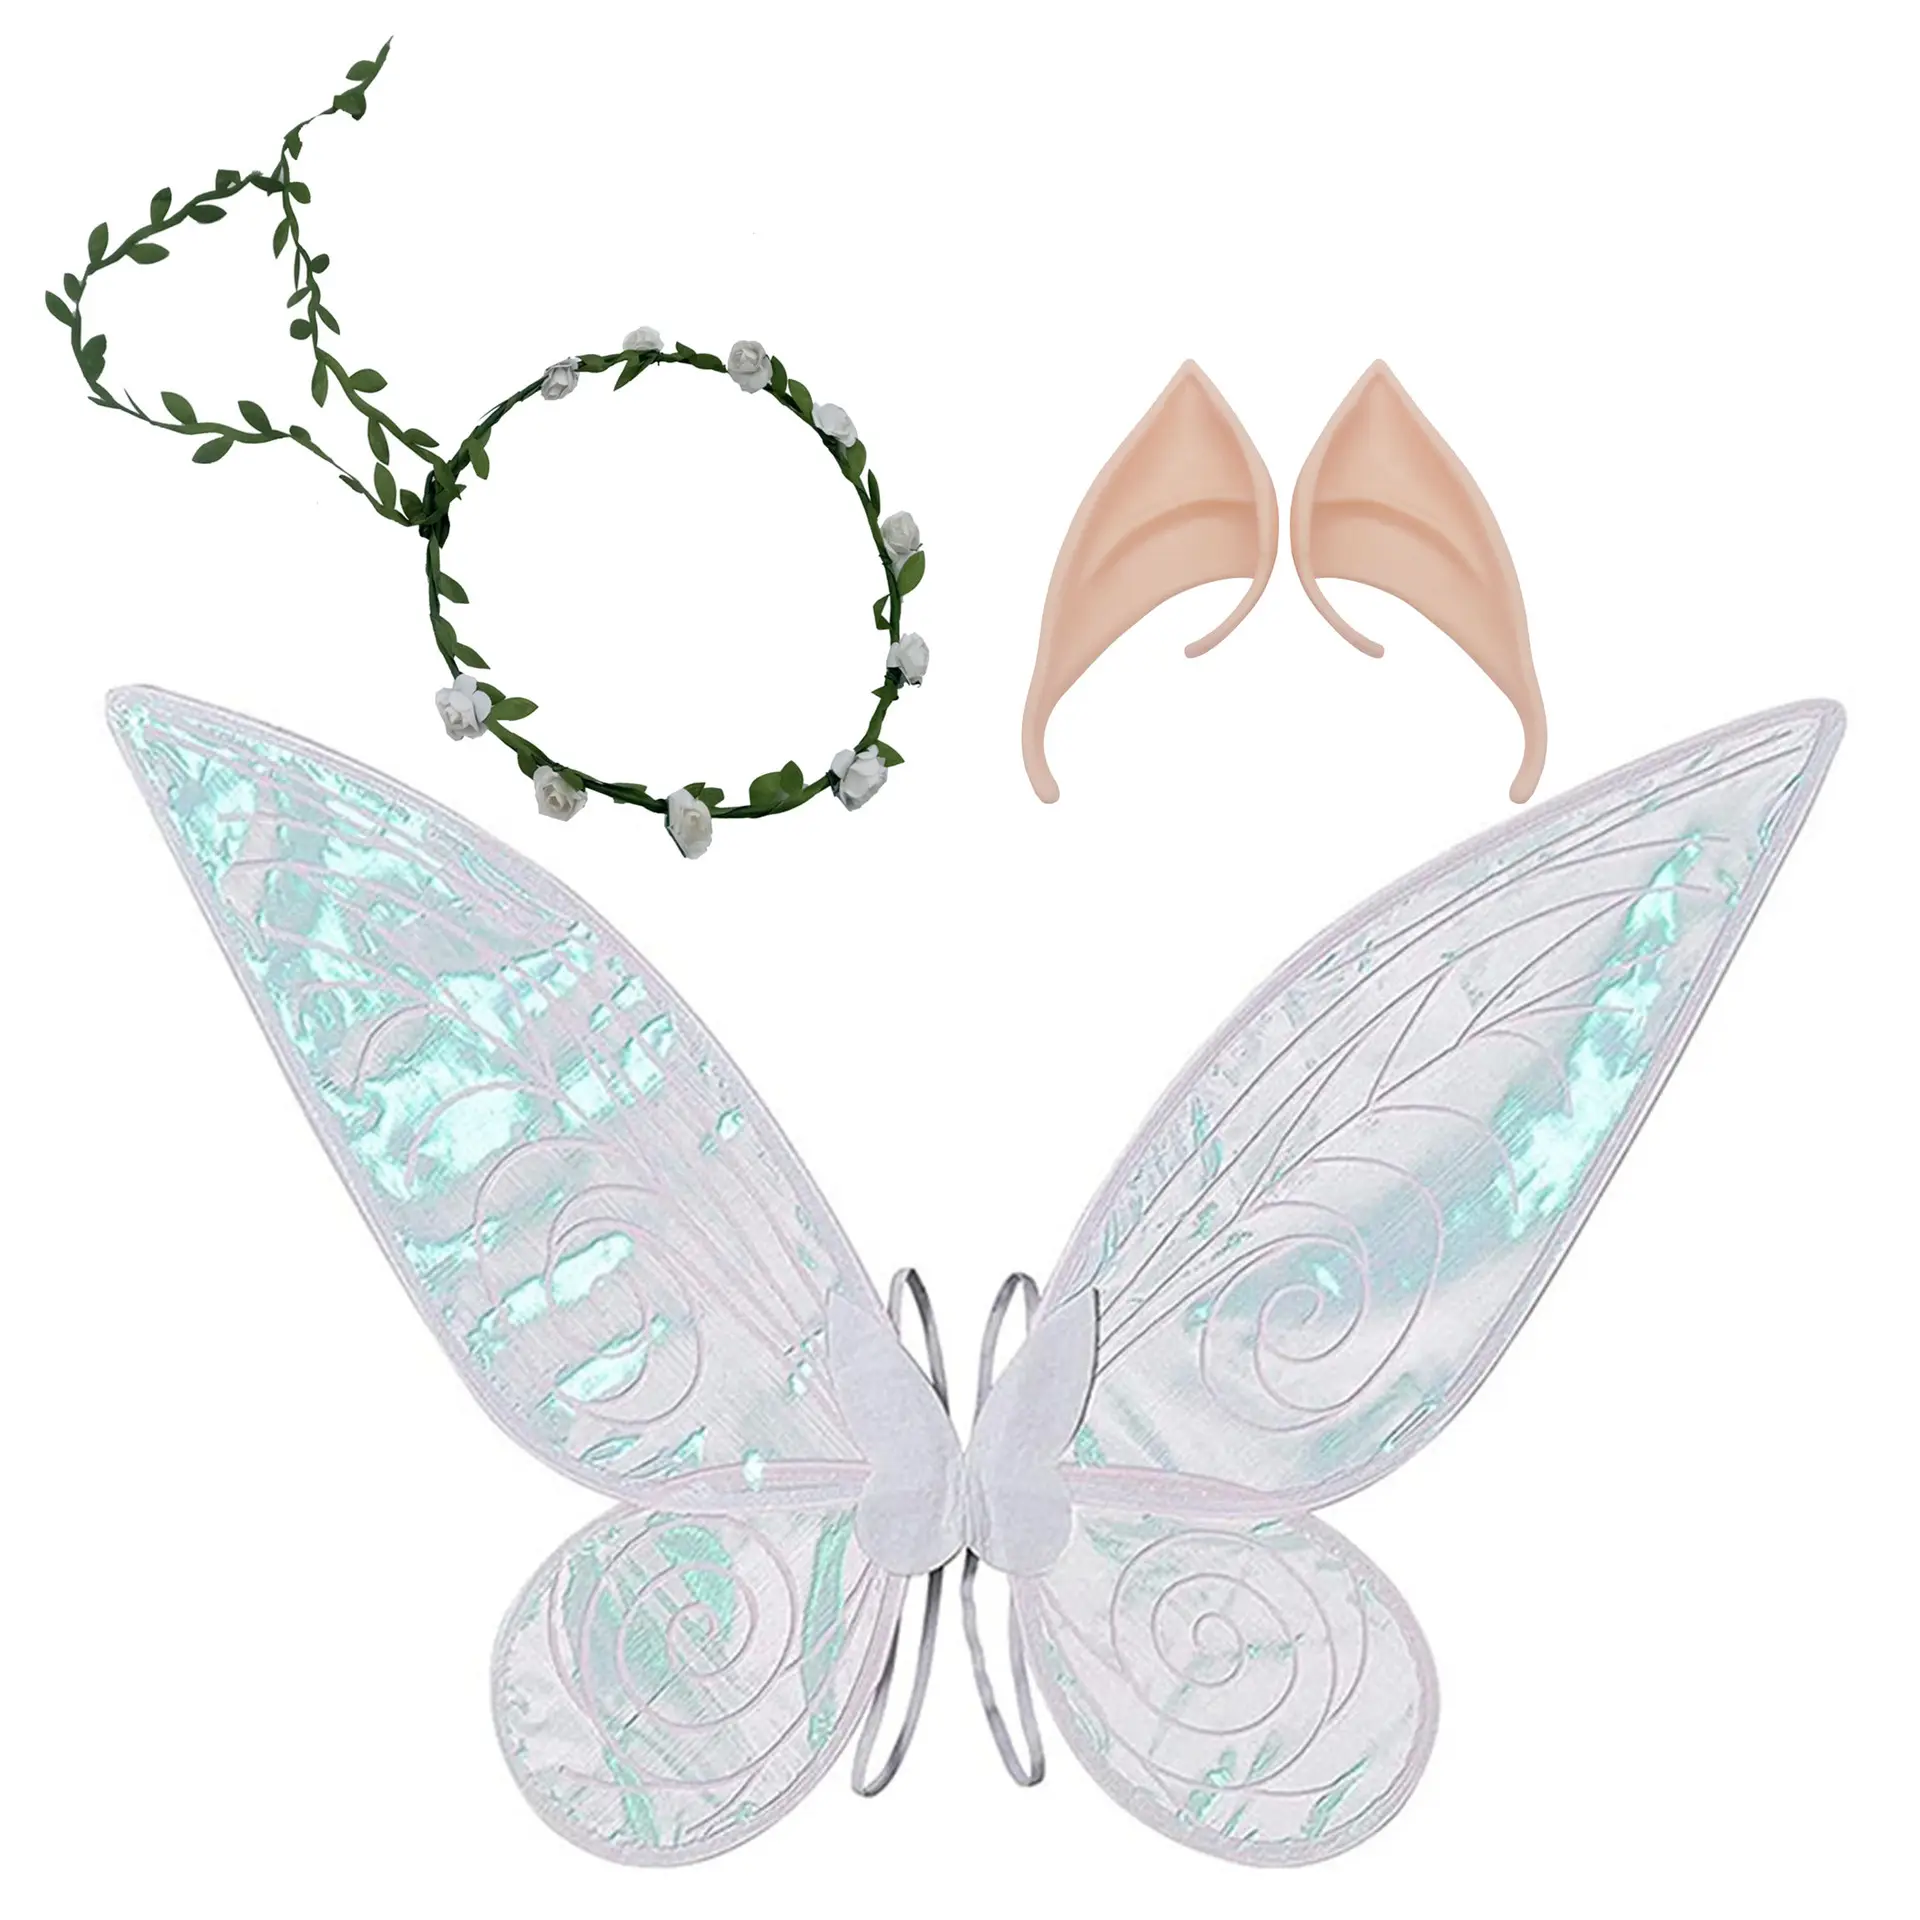 New Angel bướm Wing Set Halloween ELF tai công chúa cổ tích bên mặc quần áo lễ hội hiệu suất đạo cụ